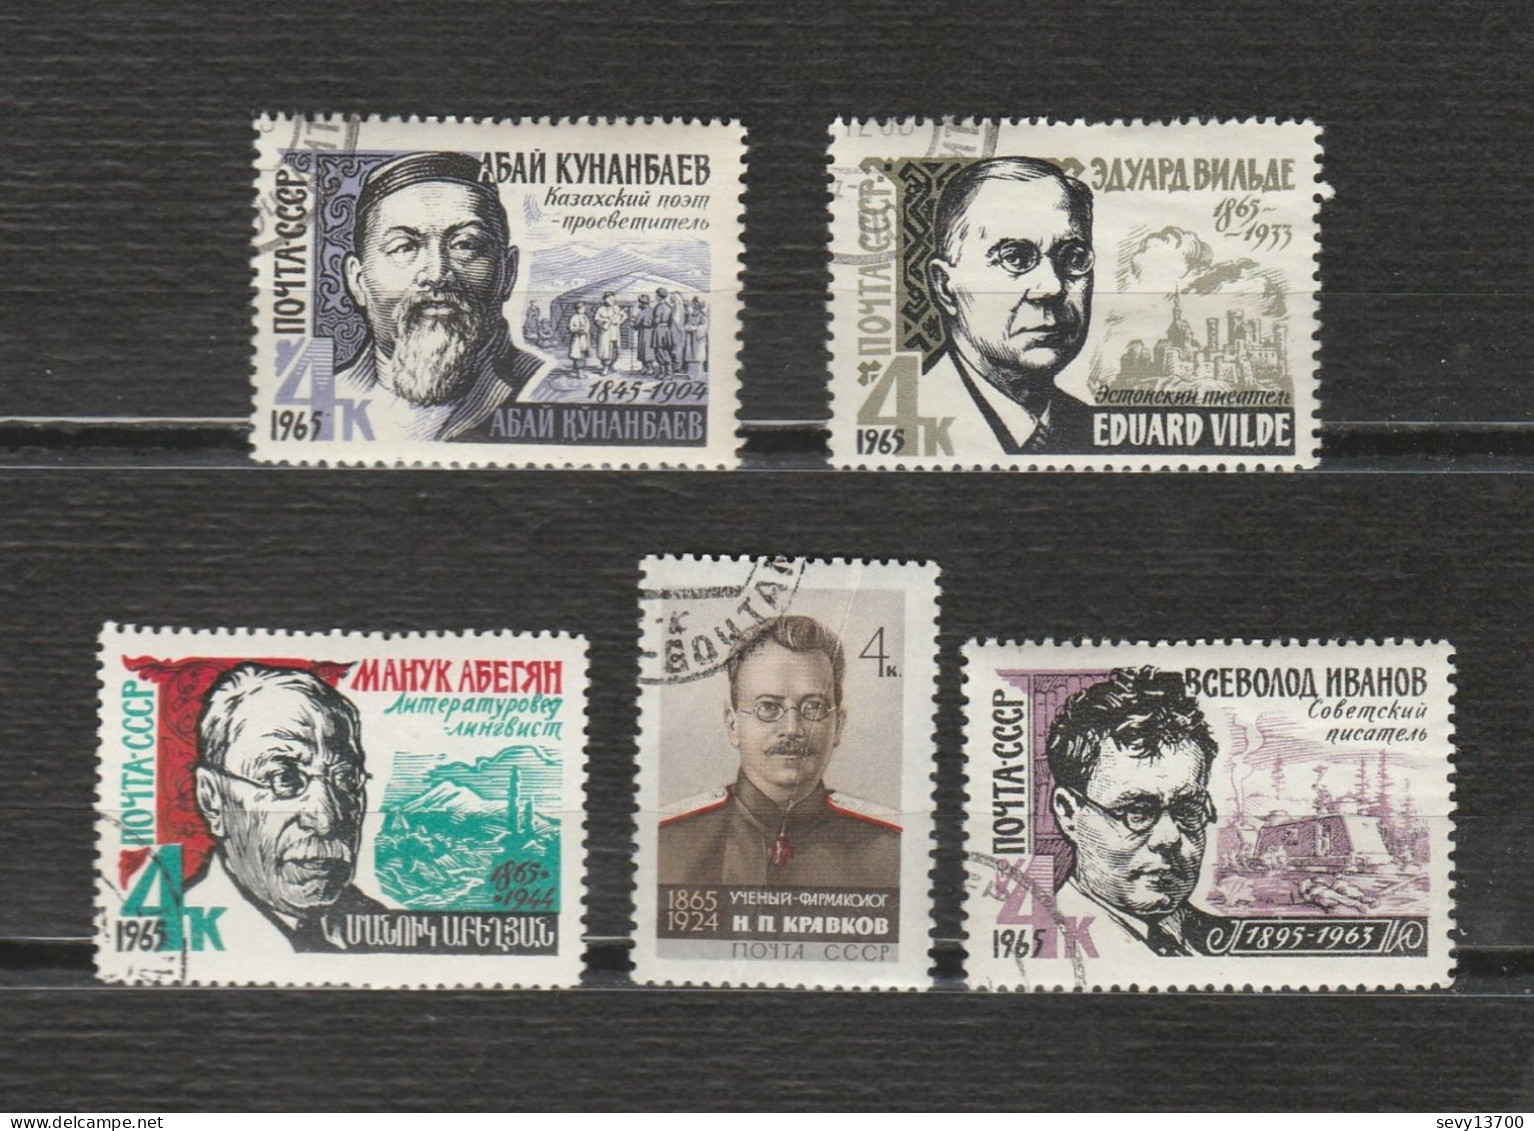 URSS Lot 47 timbres personnage année 1959 - année 1960 - année 1957 - année 1964 - année 1965